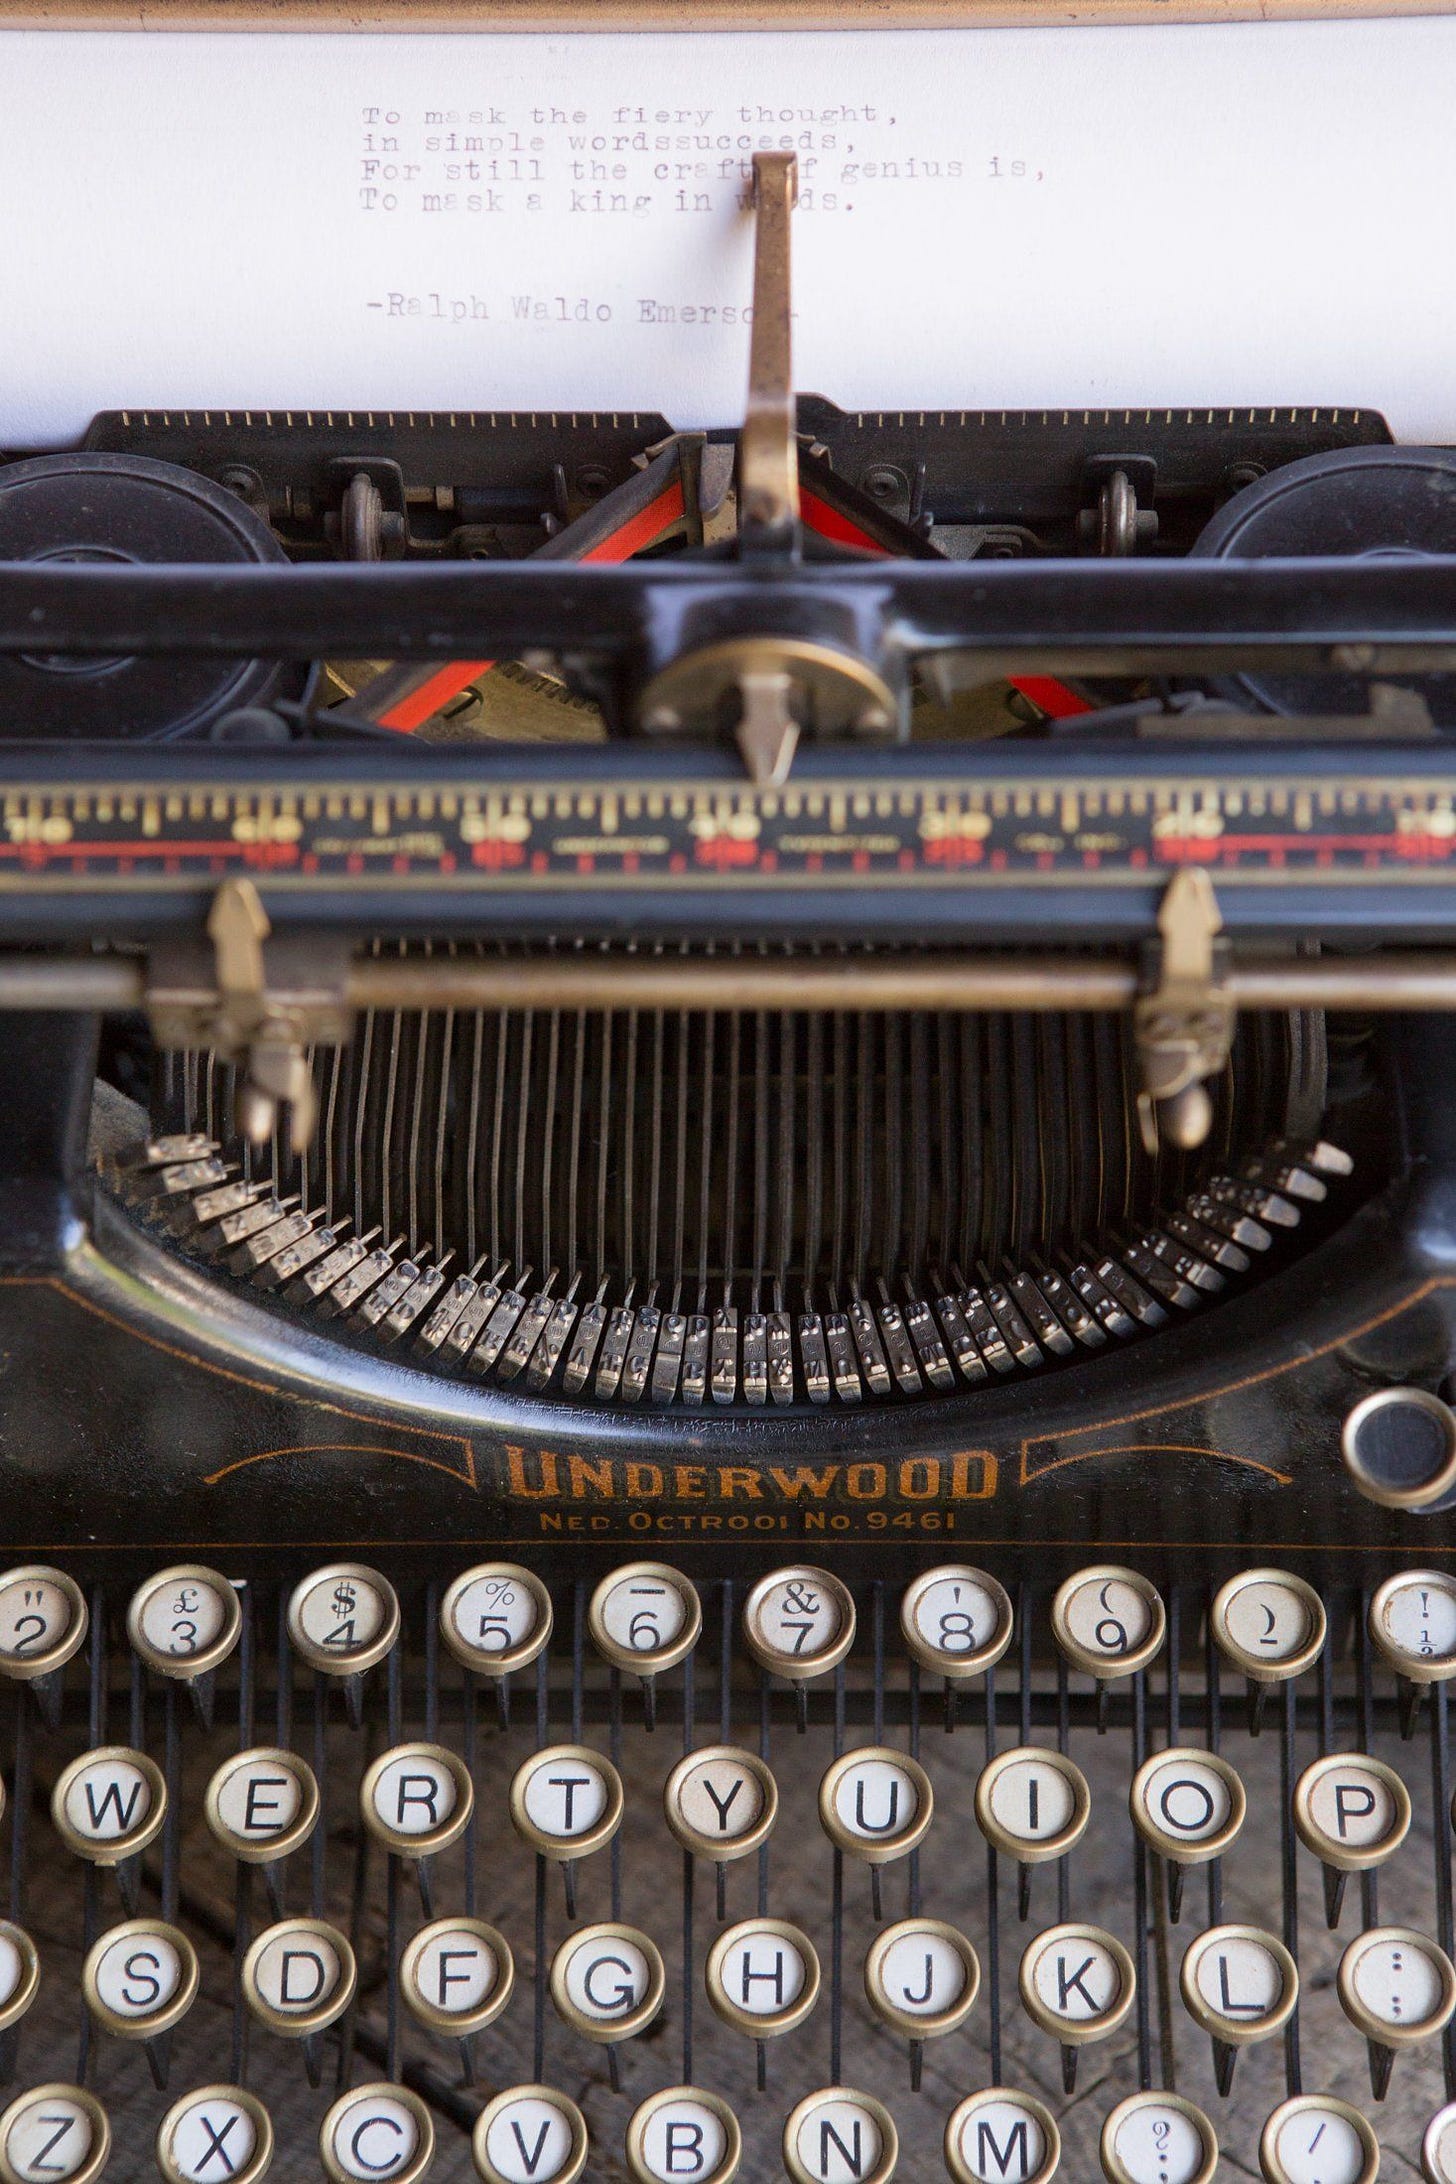 Máquina de escrever da Underwood, com marteletes que contêm as letras minúsculas e maiúsculas das letras. Ao pressionar a telca 